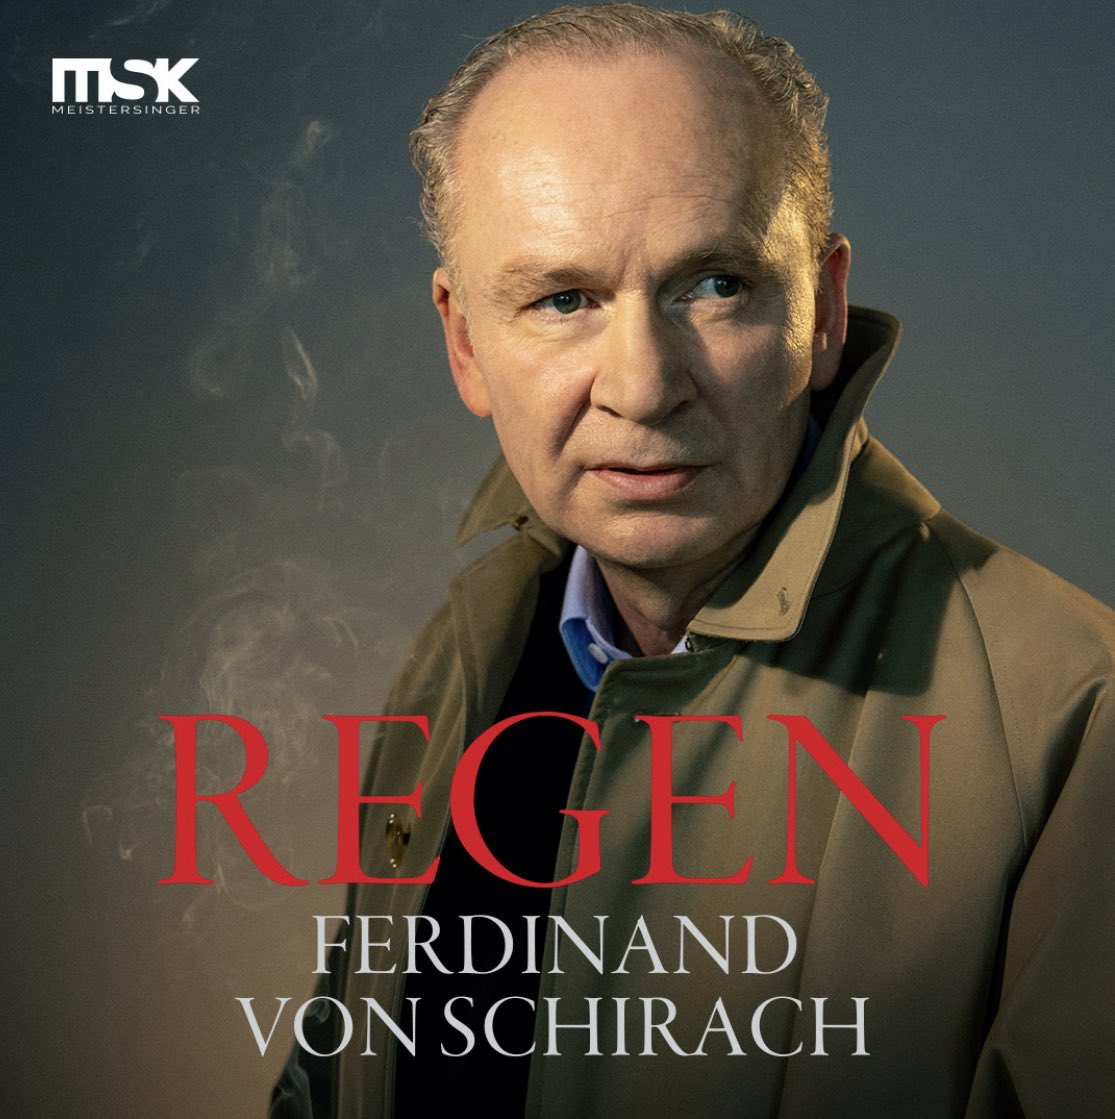 #REGEN - Ein Bühnenstück von und mit Ferdinand von Schirach: Am 20. Oktober dürfen wir #FerdinandvonSchirach im Großen Haus begrüßen. In der Welturaufführung von REGEN ist er erstmals als Schauspieler zu sehen. @LuchterhandLit @MDR_SAN @mzwebde @VisitDessau #dessau #schirach